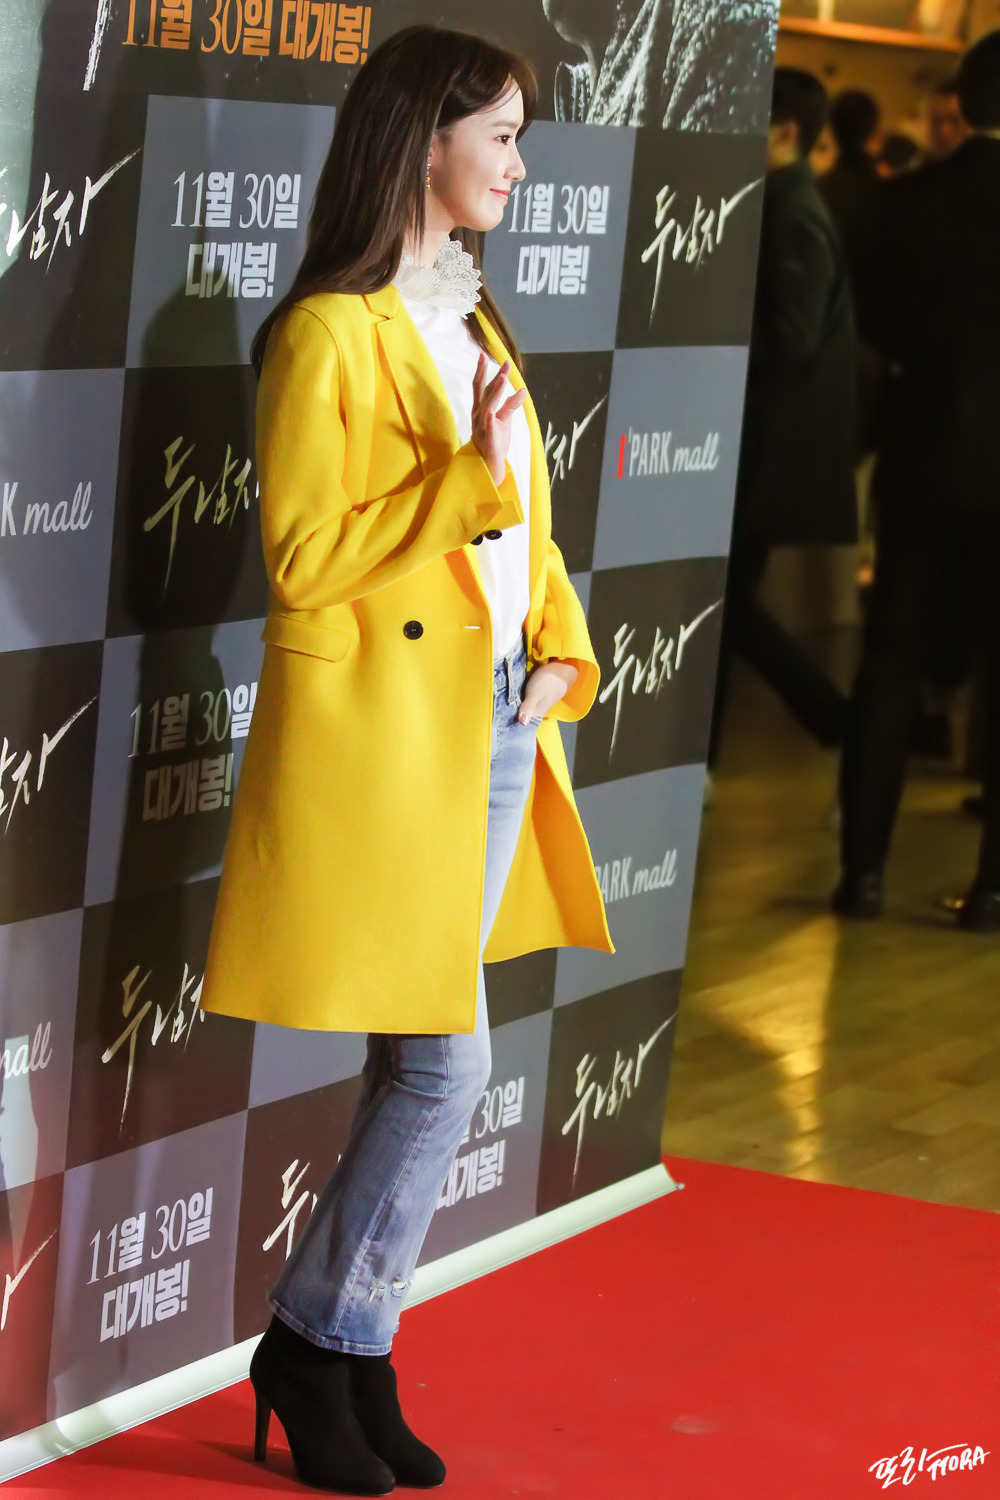 [PIC][22-11-2016]SooYoung và YoonA tham dự buổi công chiếu VIP của Movie "Derailed" vào tối nay - Page 2 2708363759083352182CF7